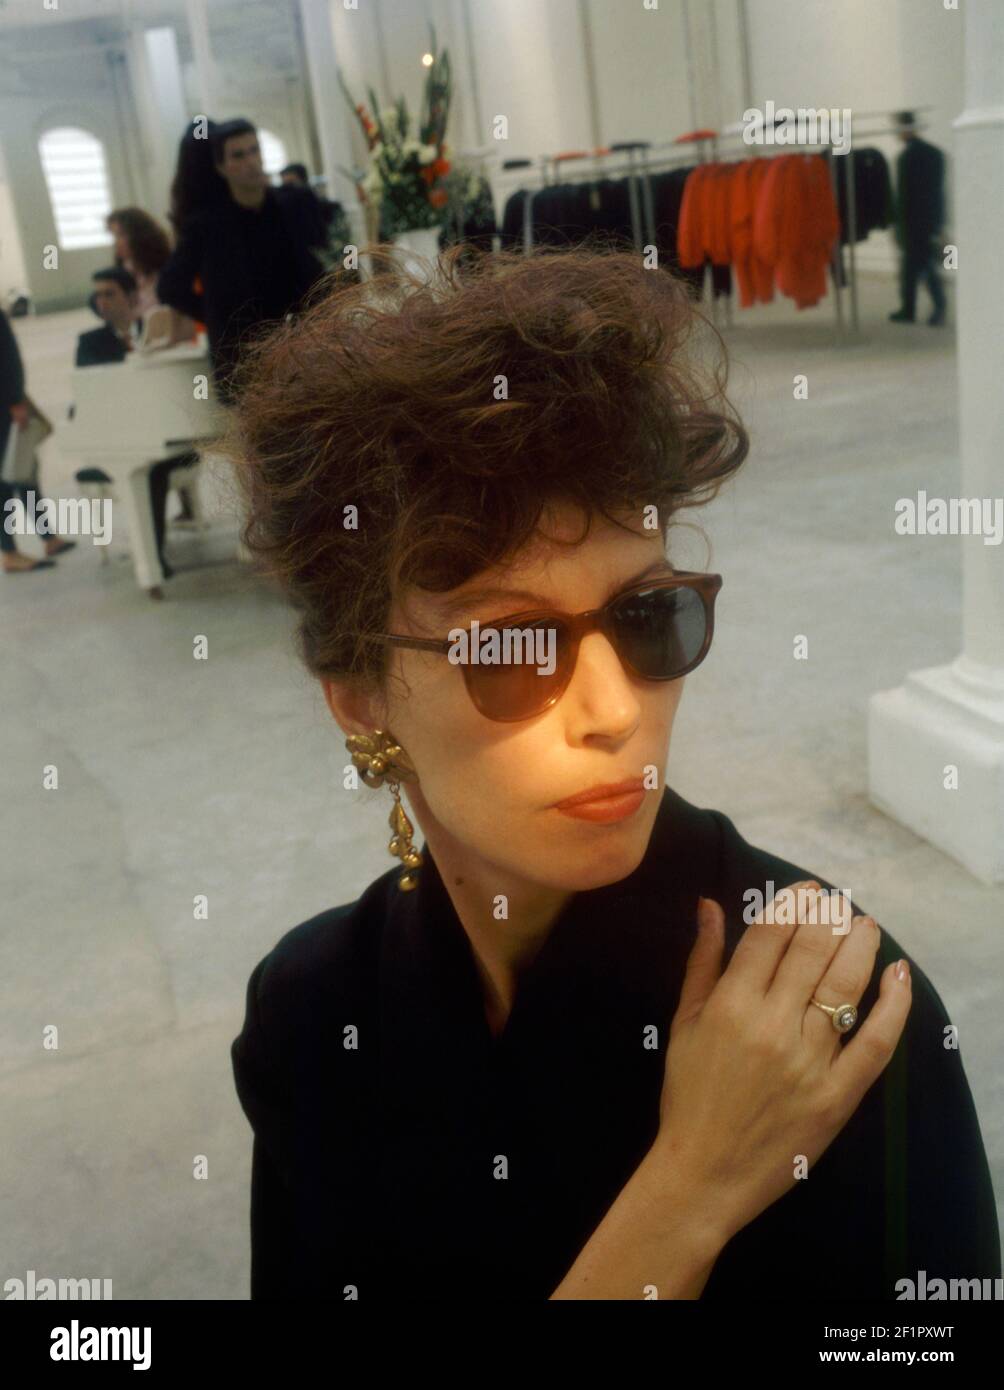 Retrato de la diseñadora de moda inglesa y activista política Katharine Hamnet alrededor de 1986 Foto de stock